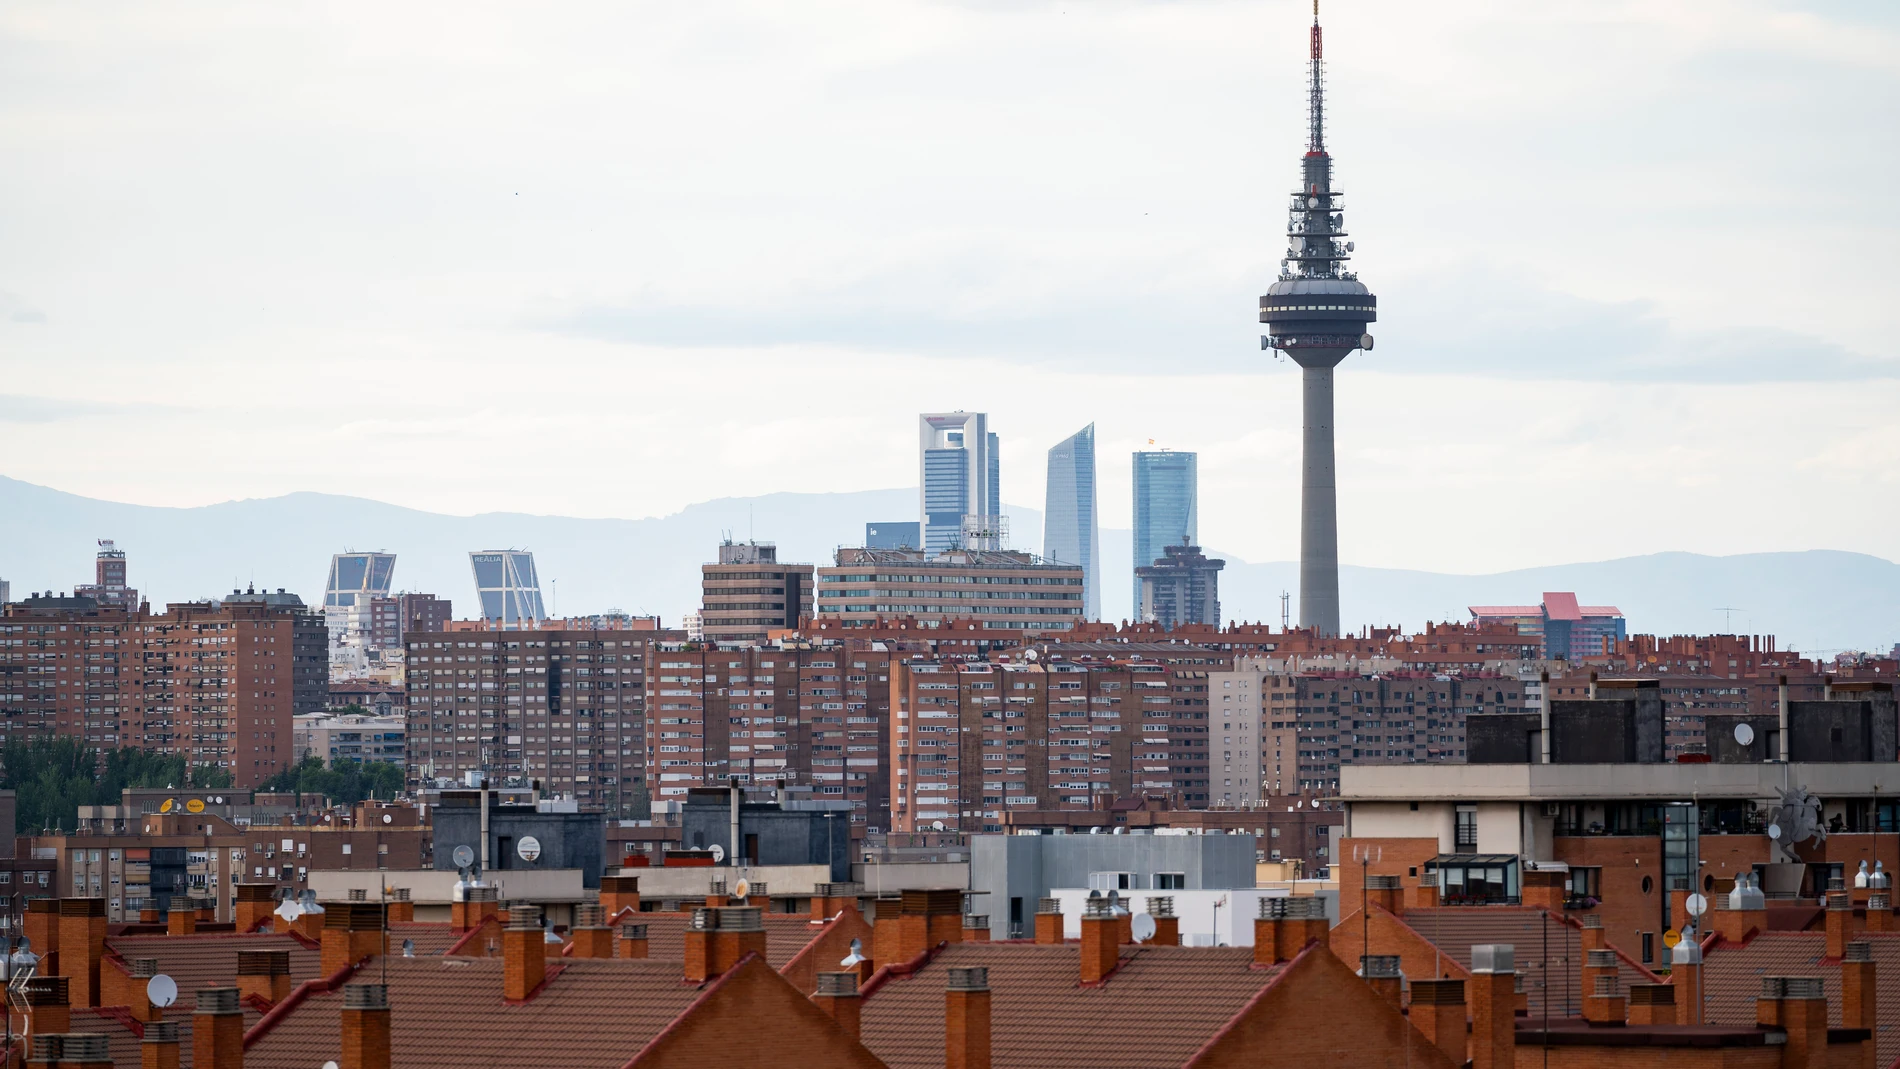 La región de Madrid se ha convertido en la más próspera y pujante de España